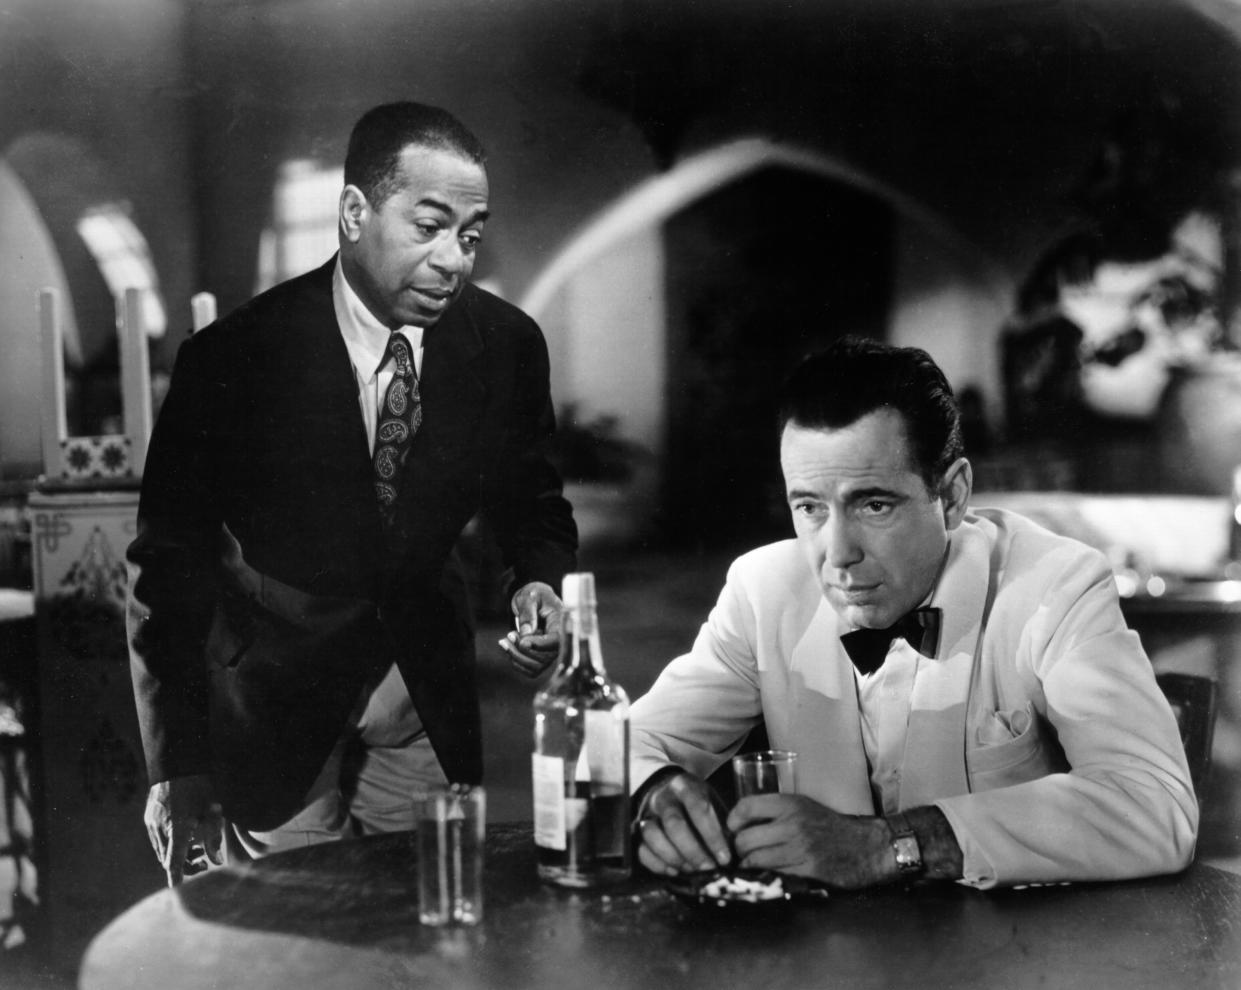 LOS ÁNGELES - 1942: Una película fija de Humphrey Bogart y Dooley Wilson en el set de la película clásica de Warner Bros 'Casablanca' en 1942 en Los Ángeles, California. (Foto de Michael Ochs Archives/Getty Images)